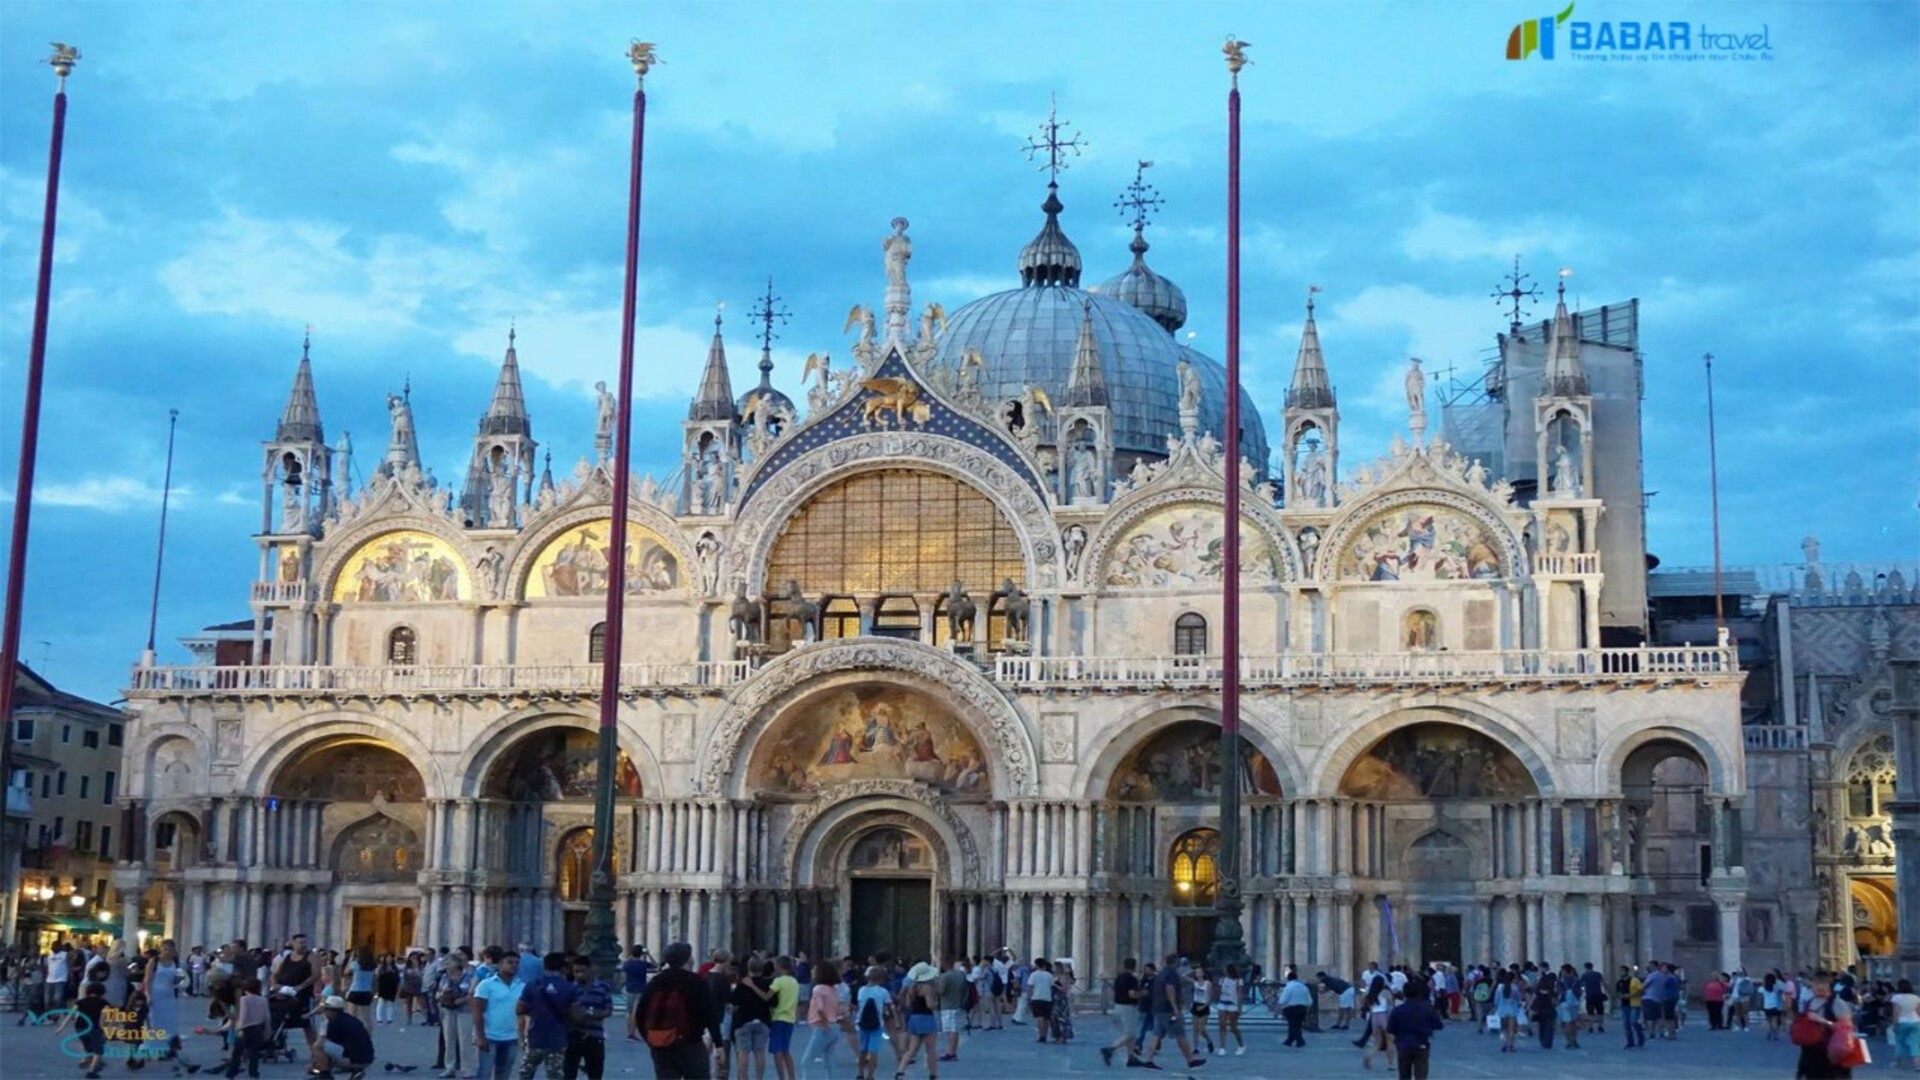 Vương cung Thánh đường St.Mark - Một tuyệt tác nghệ thuật của kiến trúc nước Ý mà BabarTravel sẽ giới thiệu tới bạn